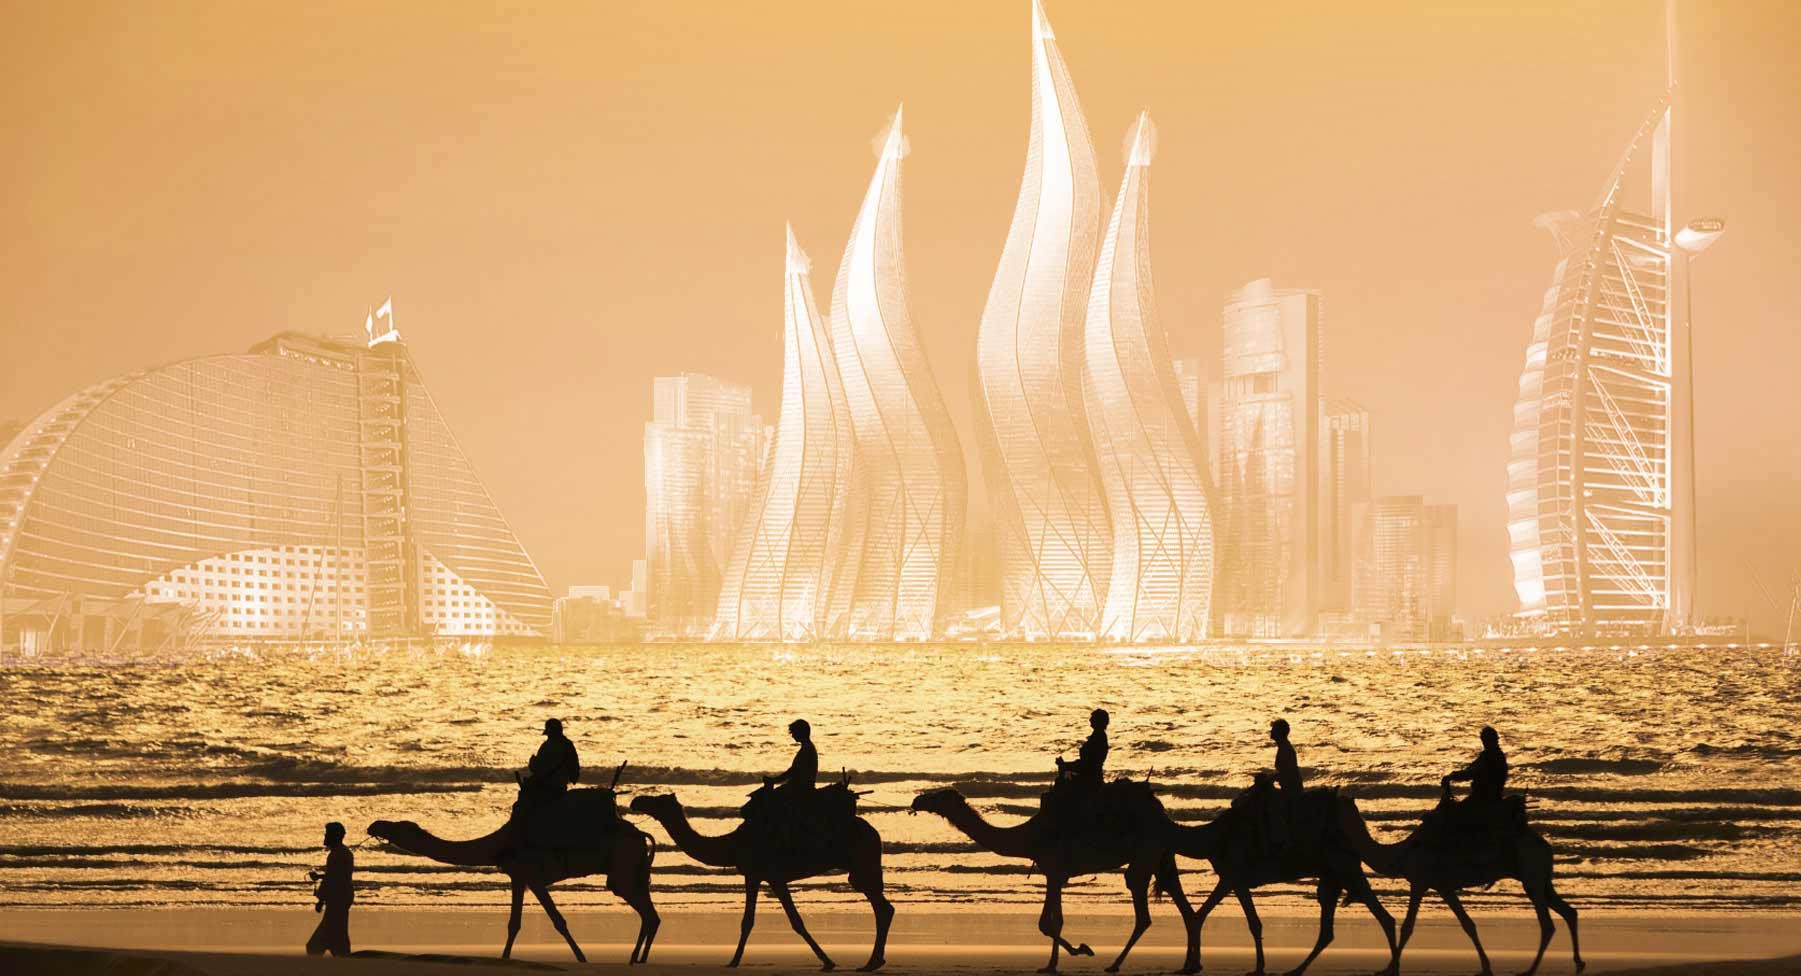 Tour du lịch Dubai 6 ngày 5 đêm trọn gói - Khởi hành hàng tuần